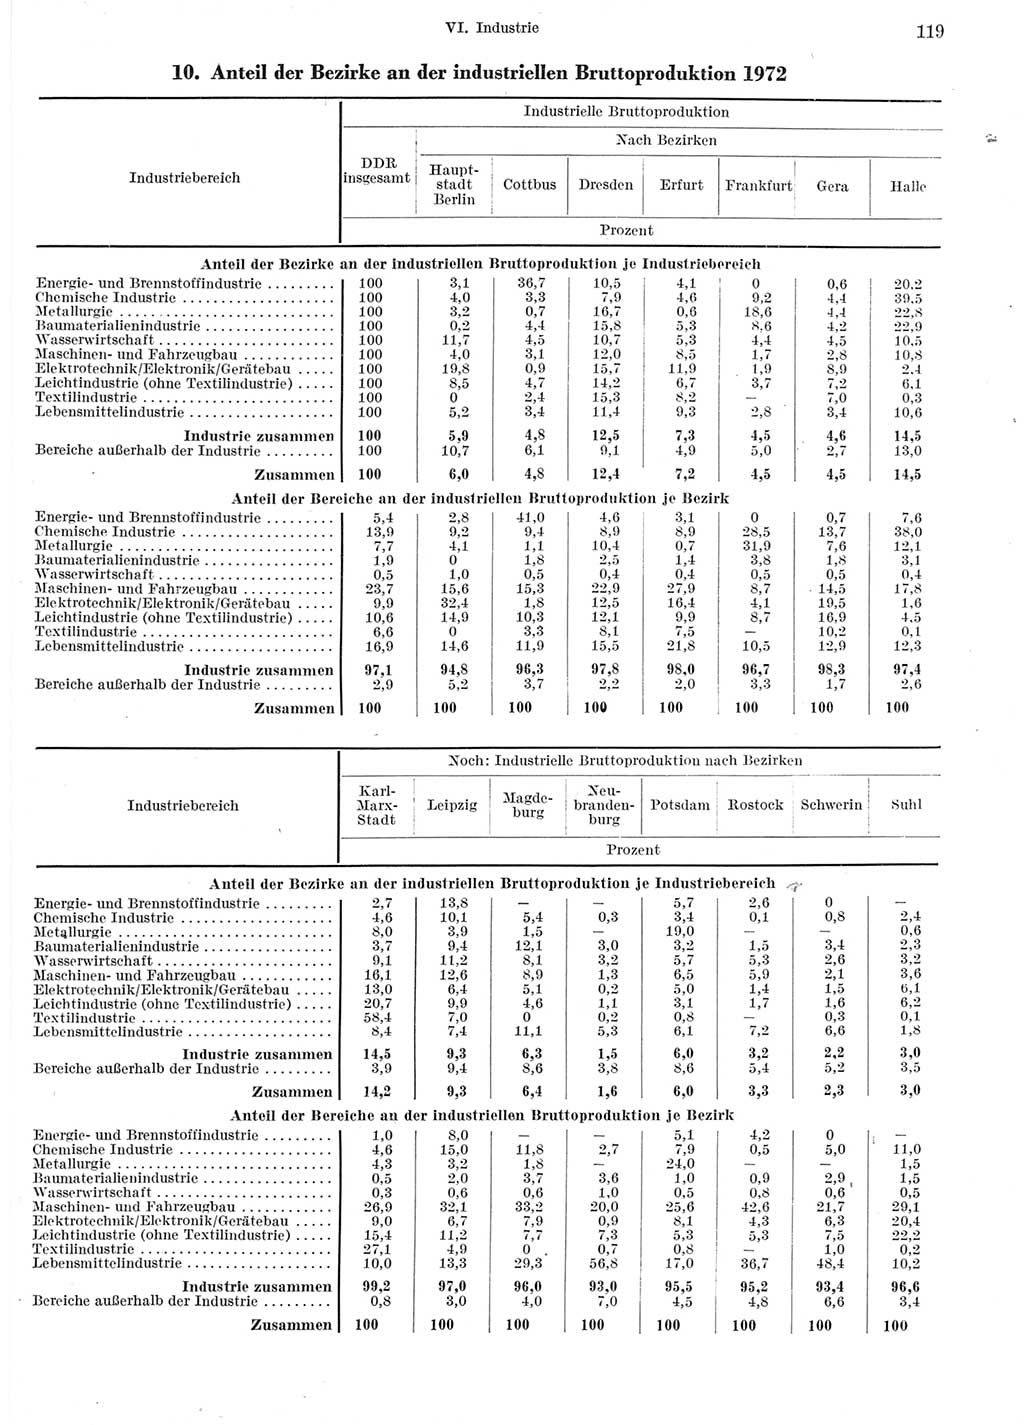 Statistisches Jahrbuch der Deutschen Demokratischen Republik (DDR) 1973, Seite 119 (Stat. Jb. DDR 1973, S. 119)